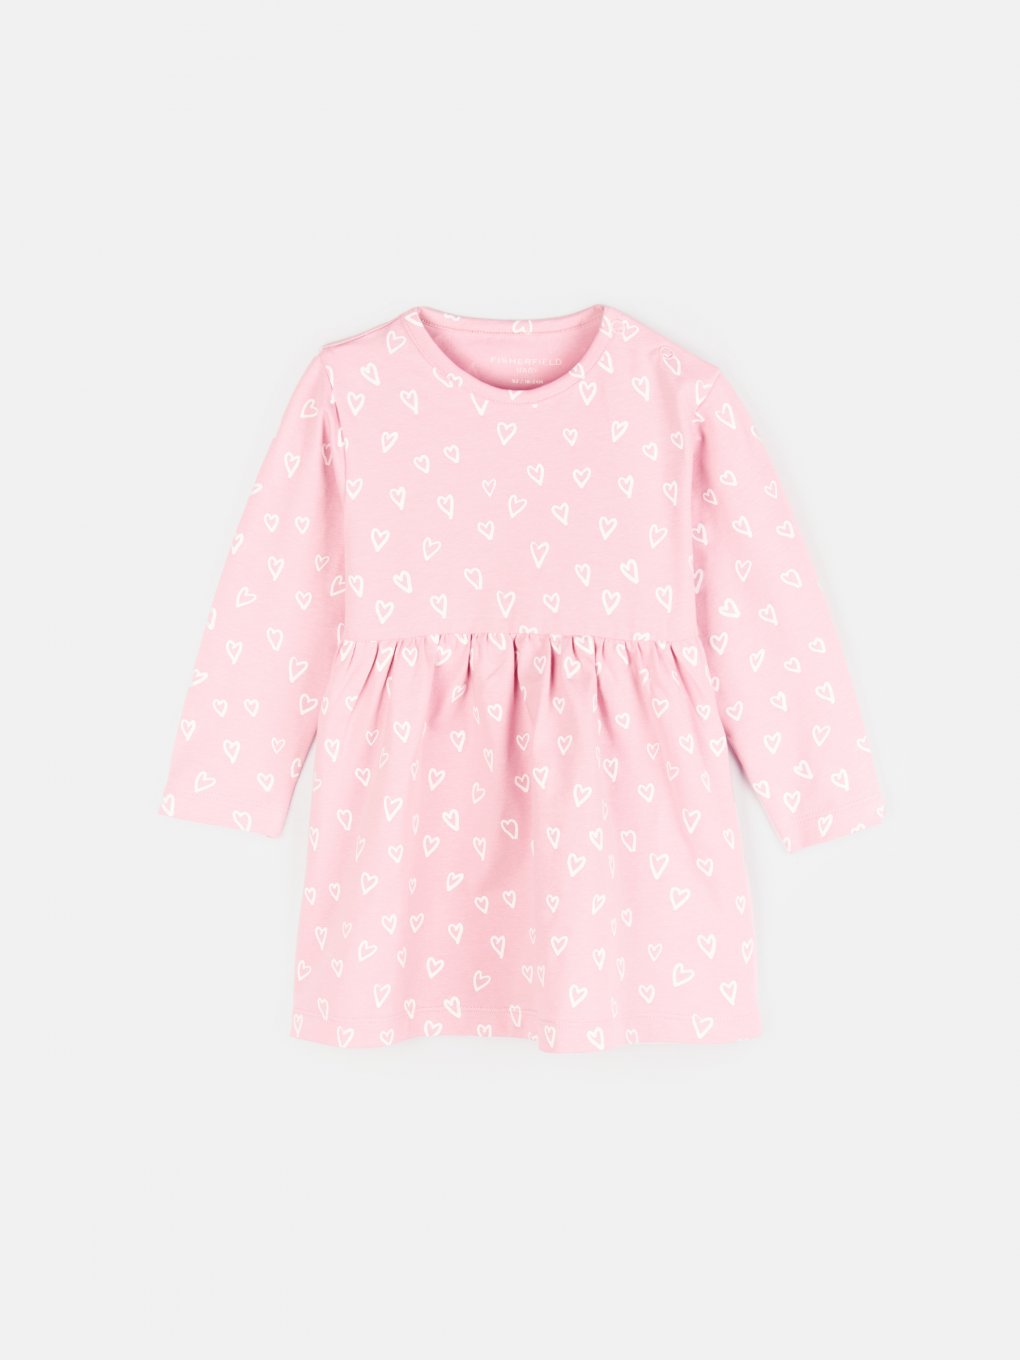 Bawełniana sukienka dla niemowląt z nadrukiem serduszek